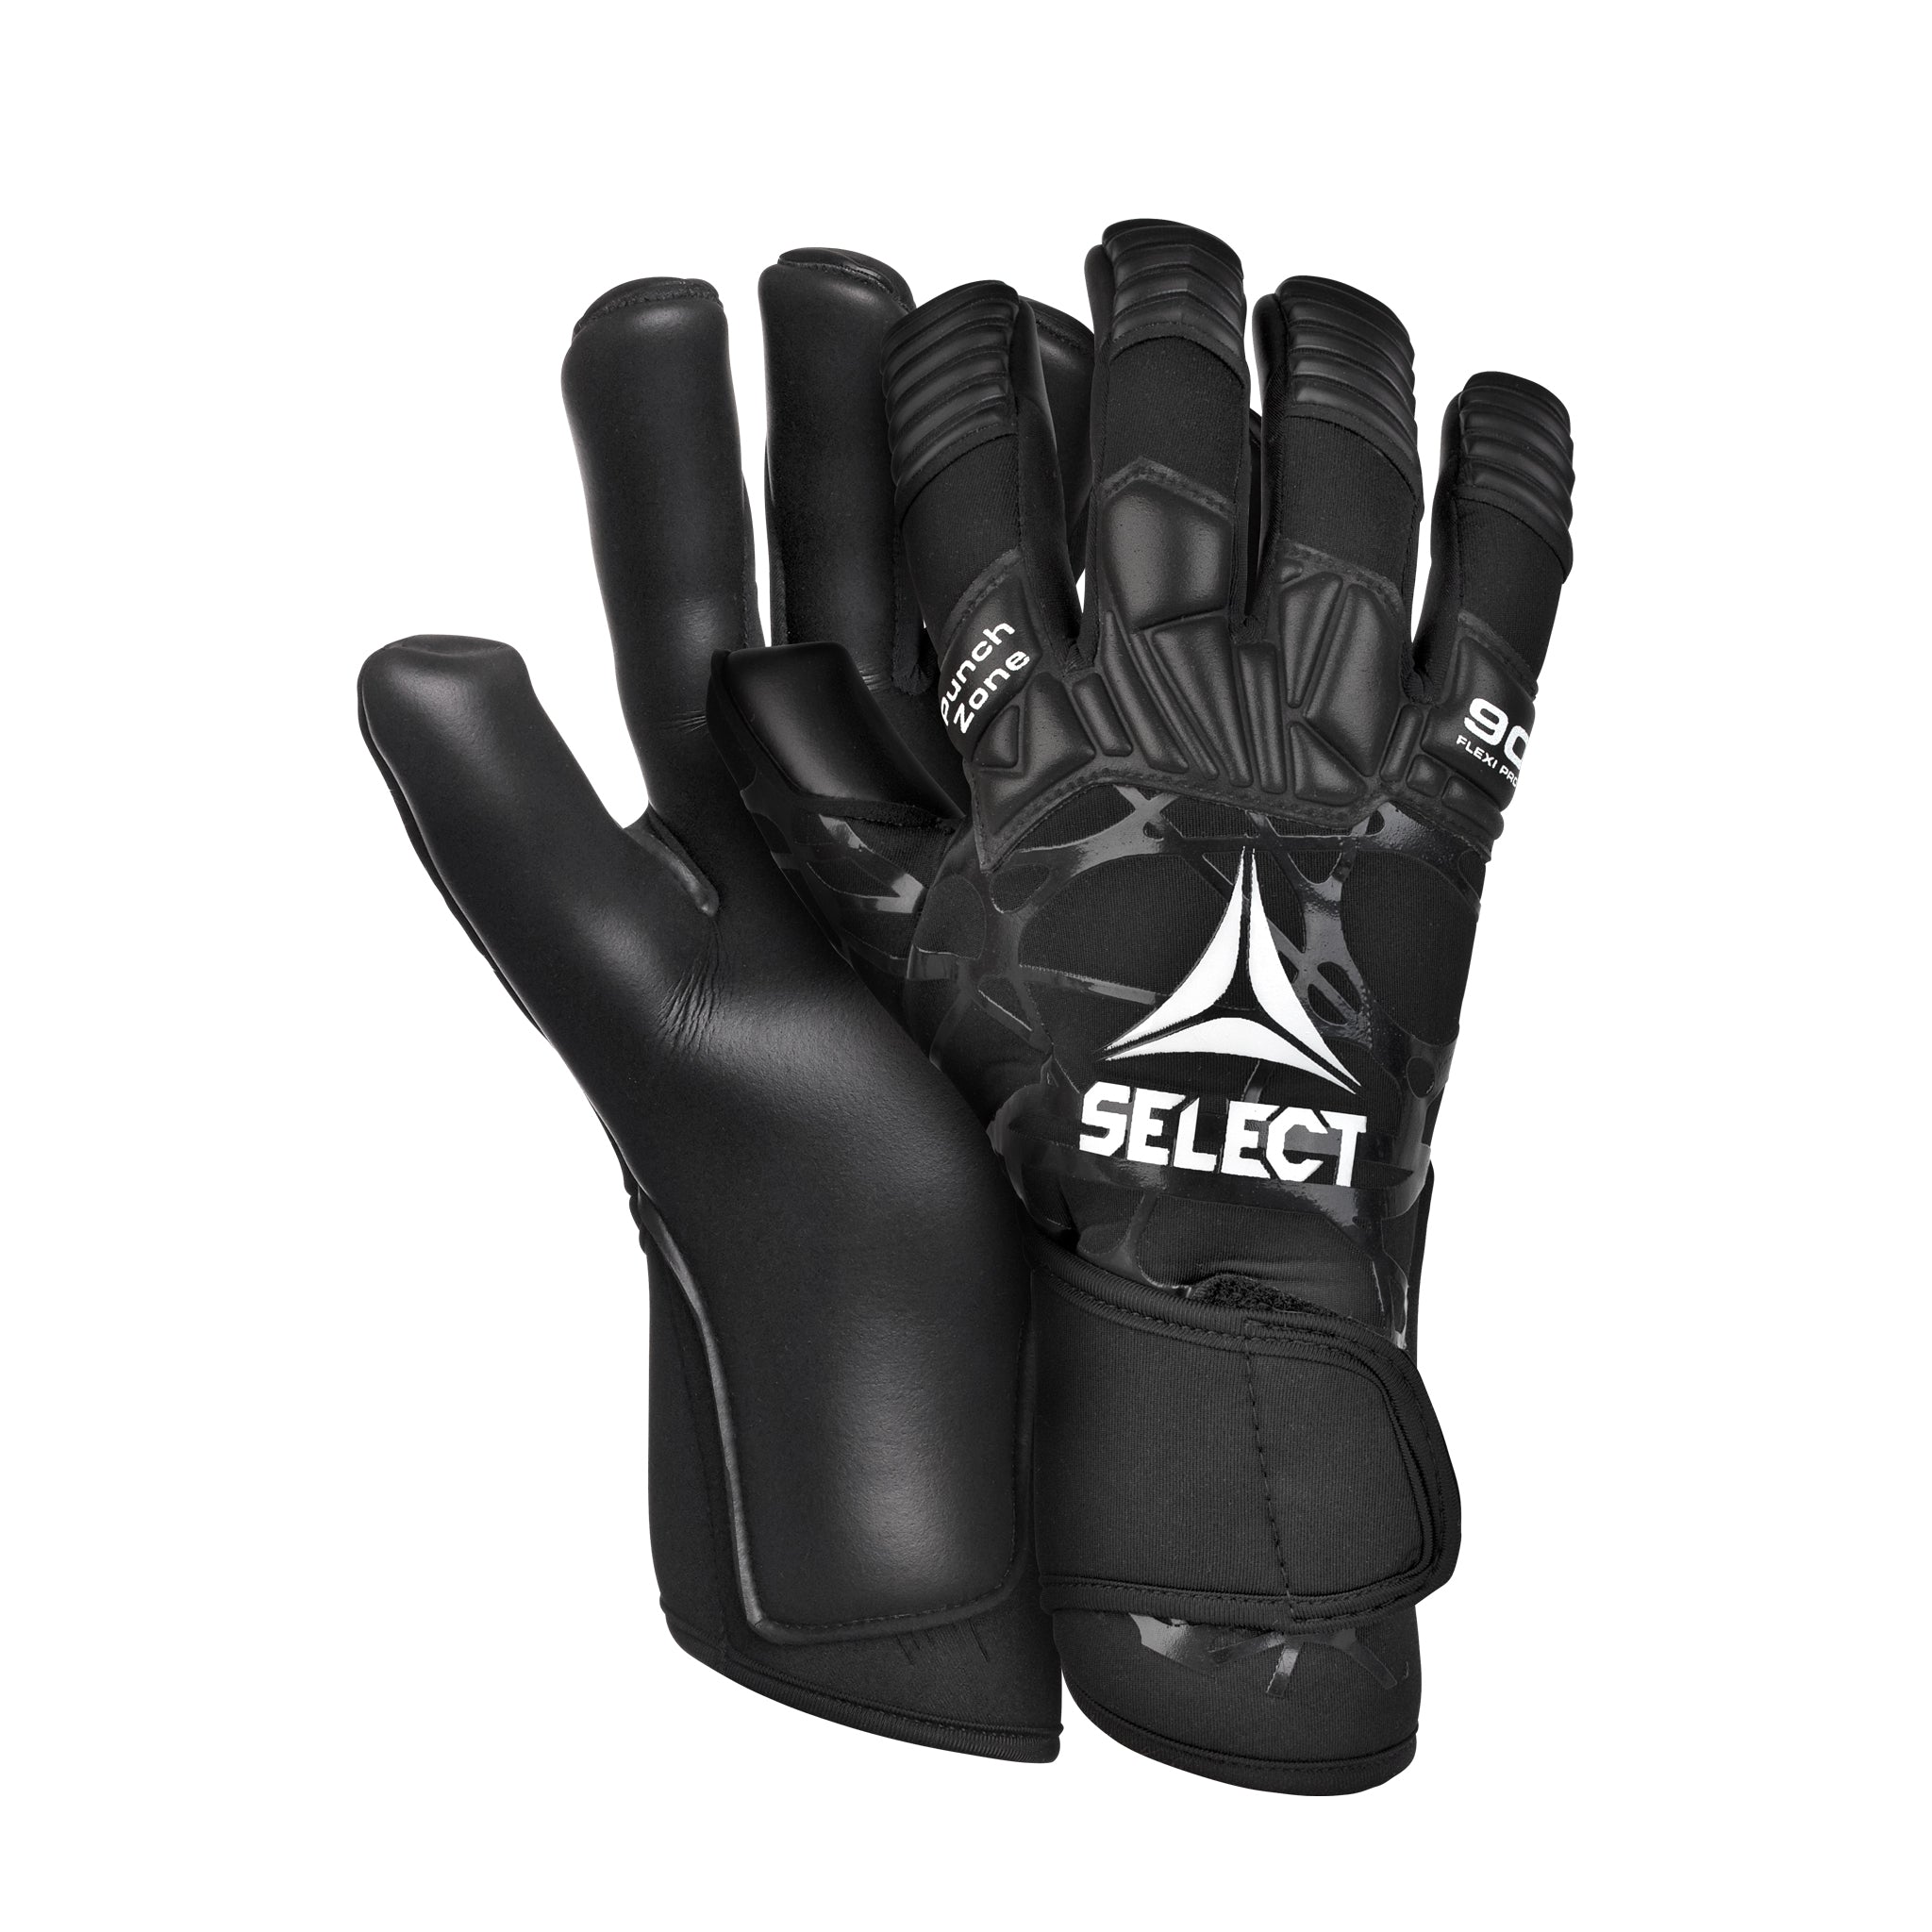 All black goalkeeper glove #color_black